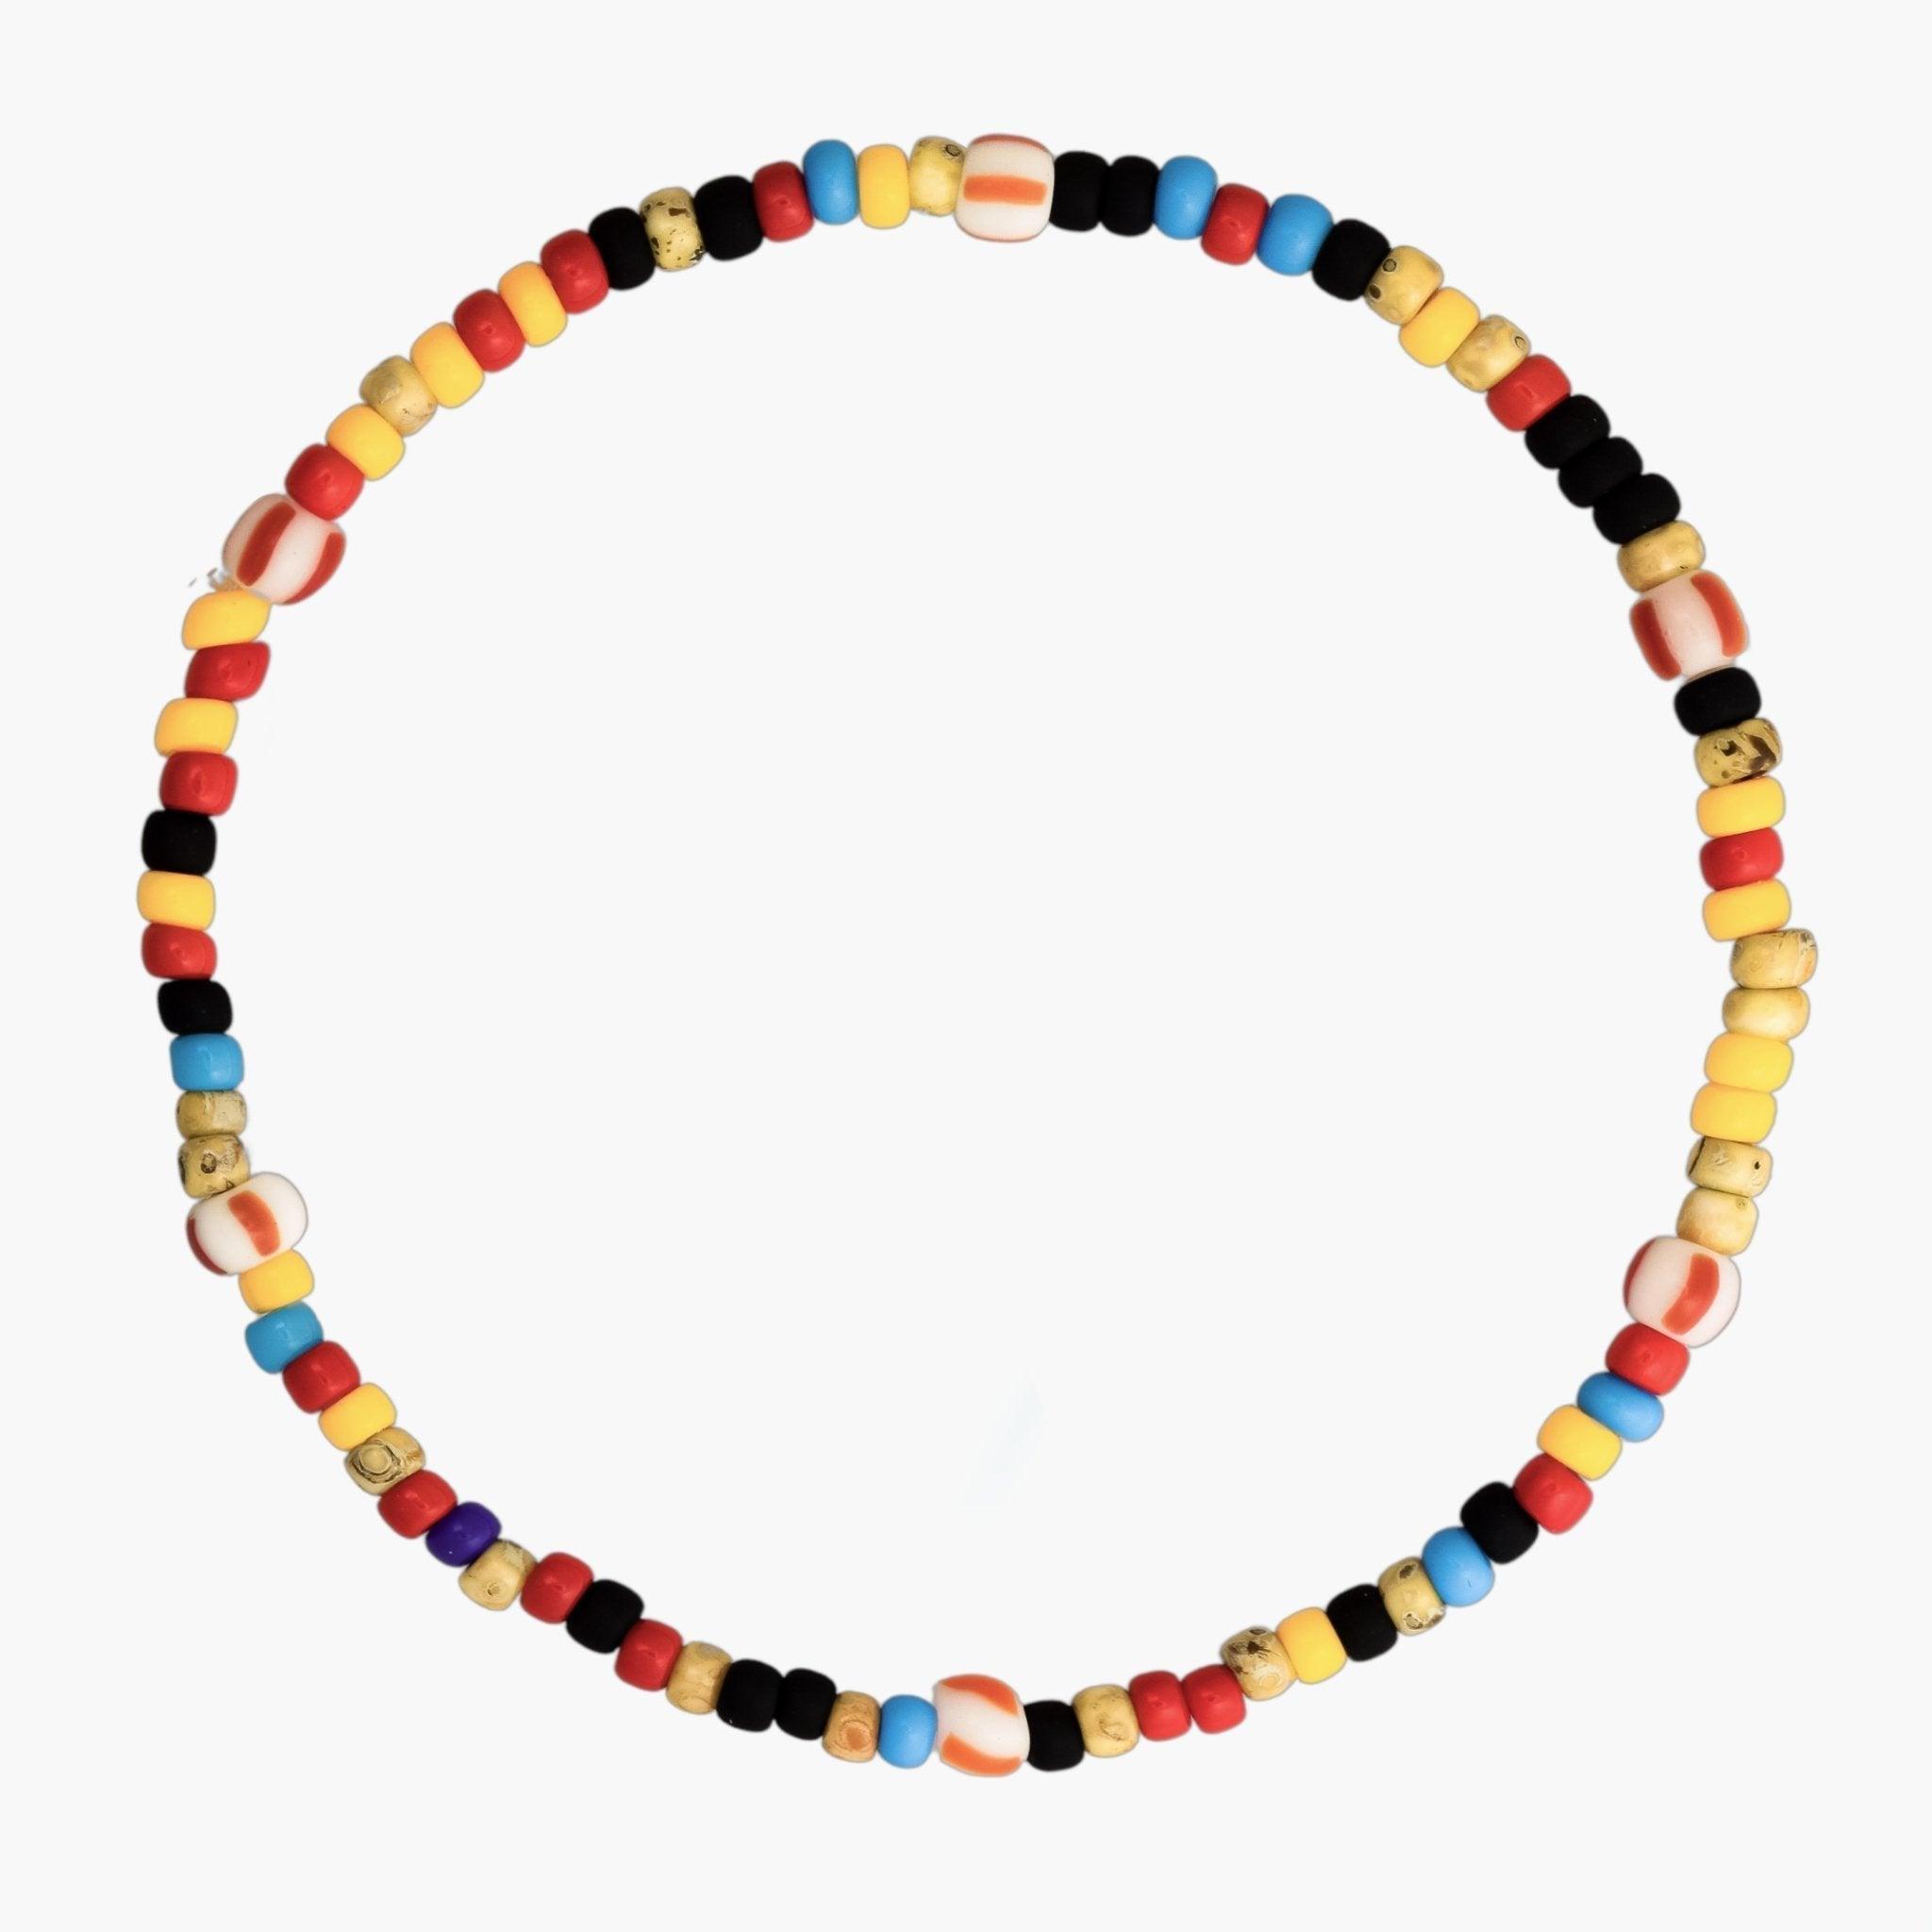 2mm Beads Dandy Bracelet (Multicolors)-Kompsós